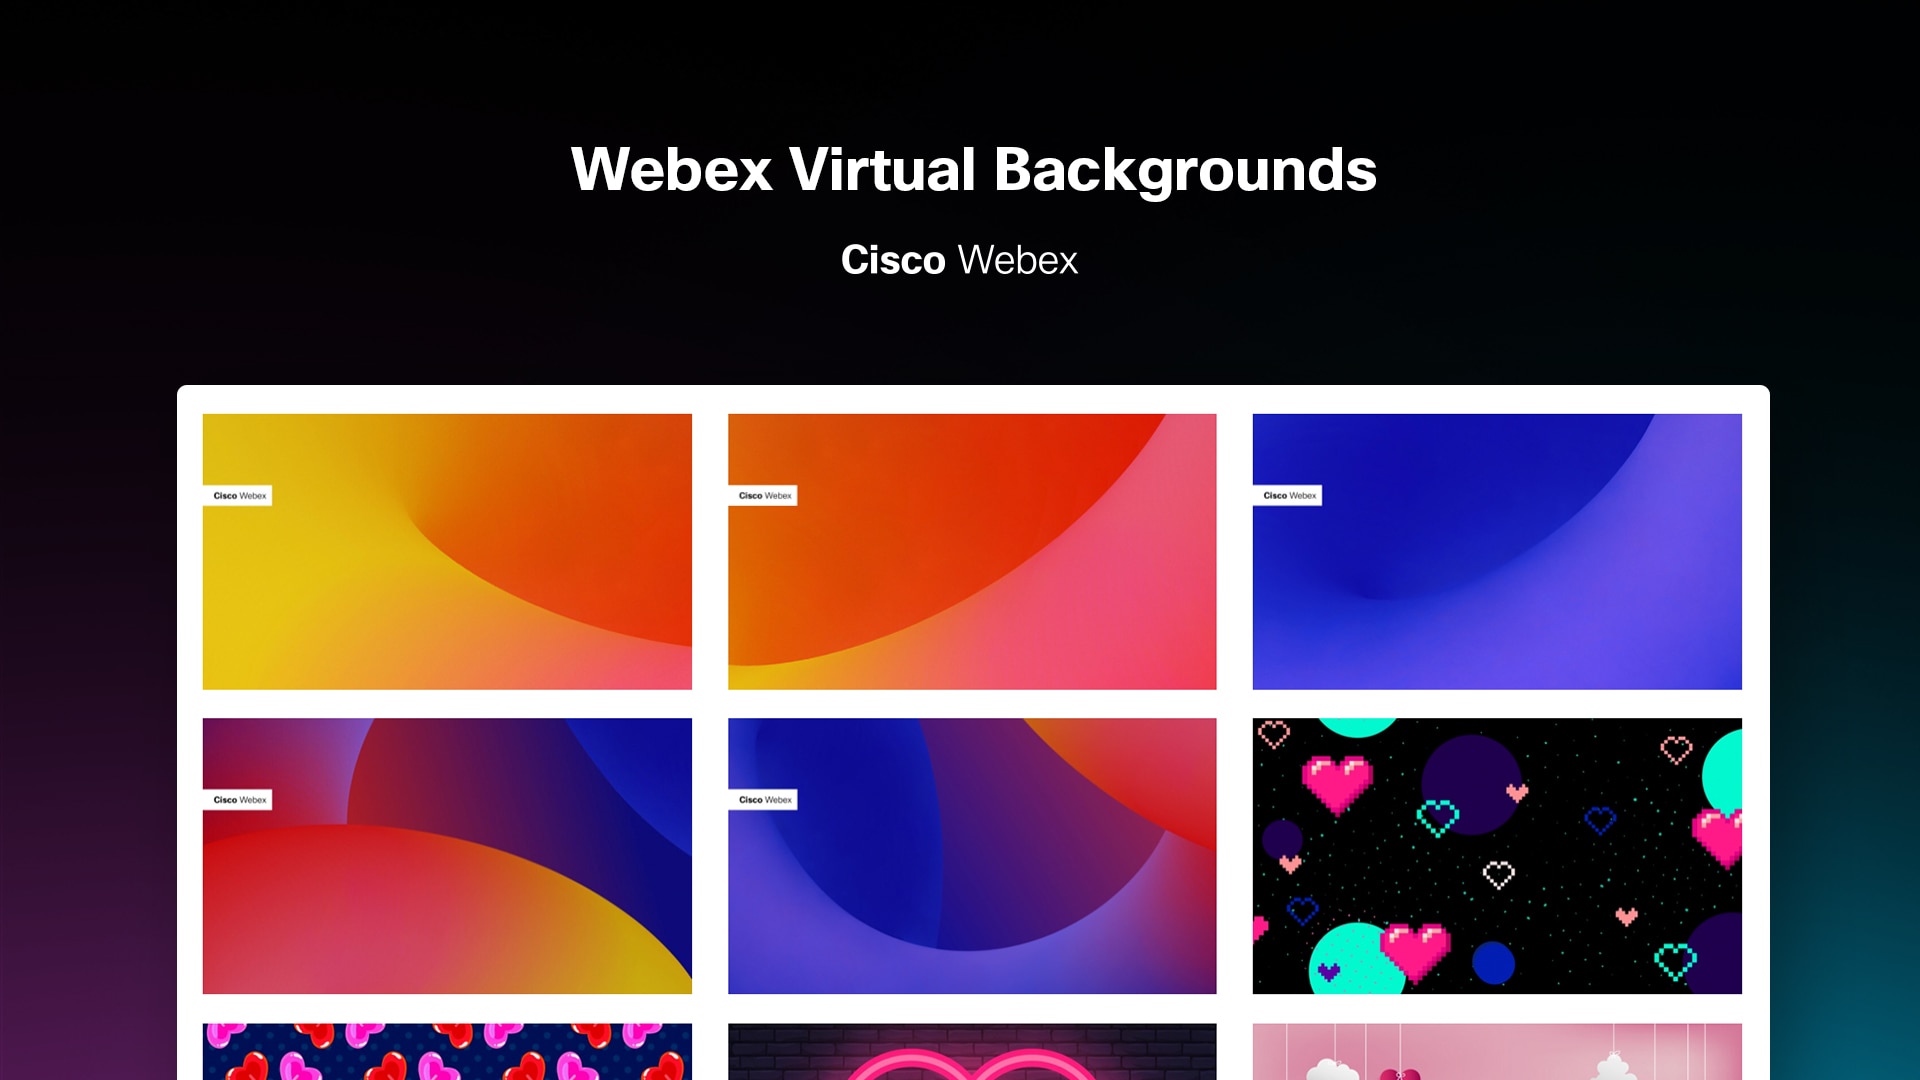 Bạn cần một nền ảo cho Webex trên Webex by Cisco? Hãy truy cập nền ảo Webex hoàn hảo cho bất kỳ cuộc họp trực tuyến nào. Với chất lượng hình ảnh tuyệt vời và tính năng tương tác ấn tượng, nền ảo Webex là cách hoàn hảo để tạo nên một cuộc trò chuyện sáng tạo và hiệu quả.